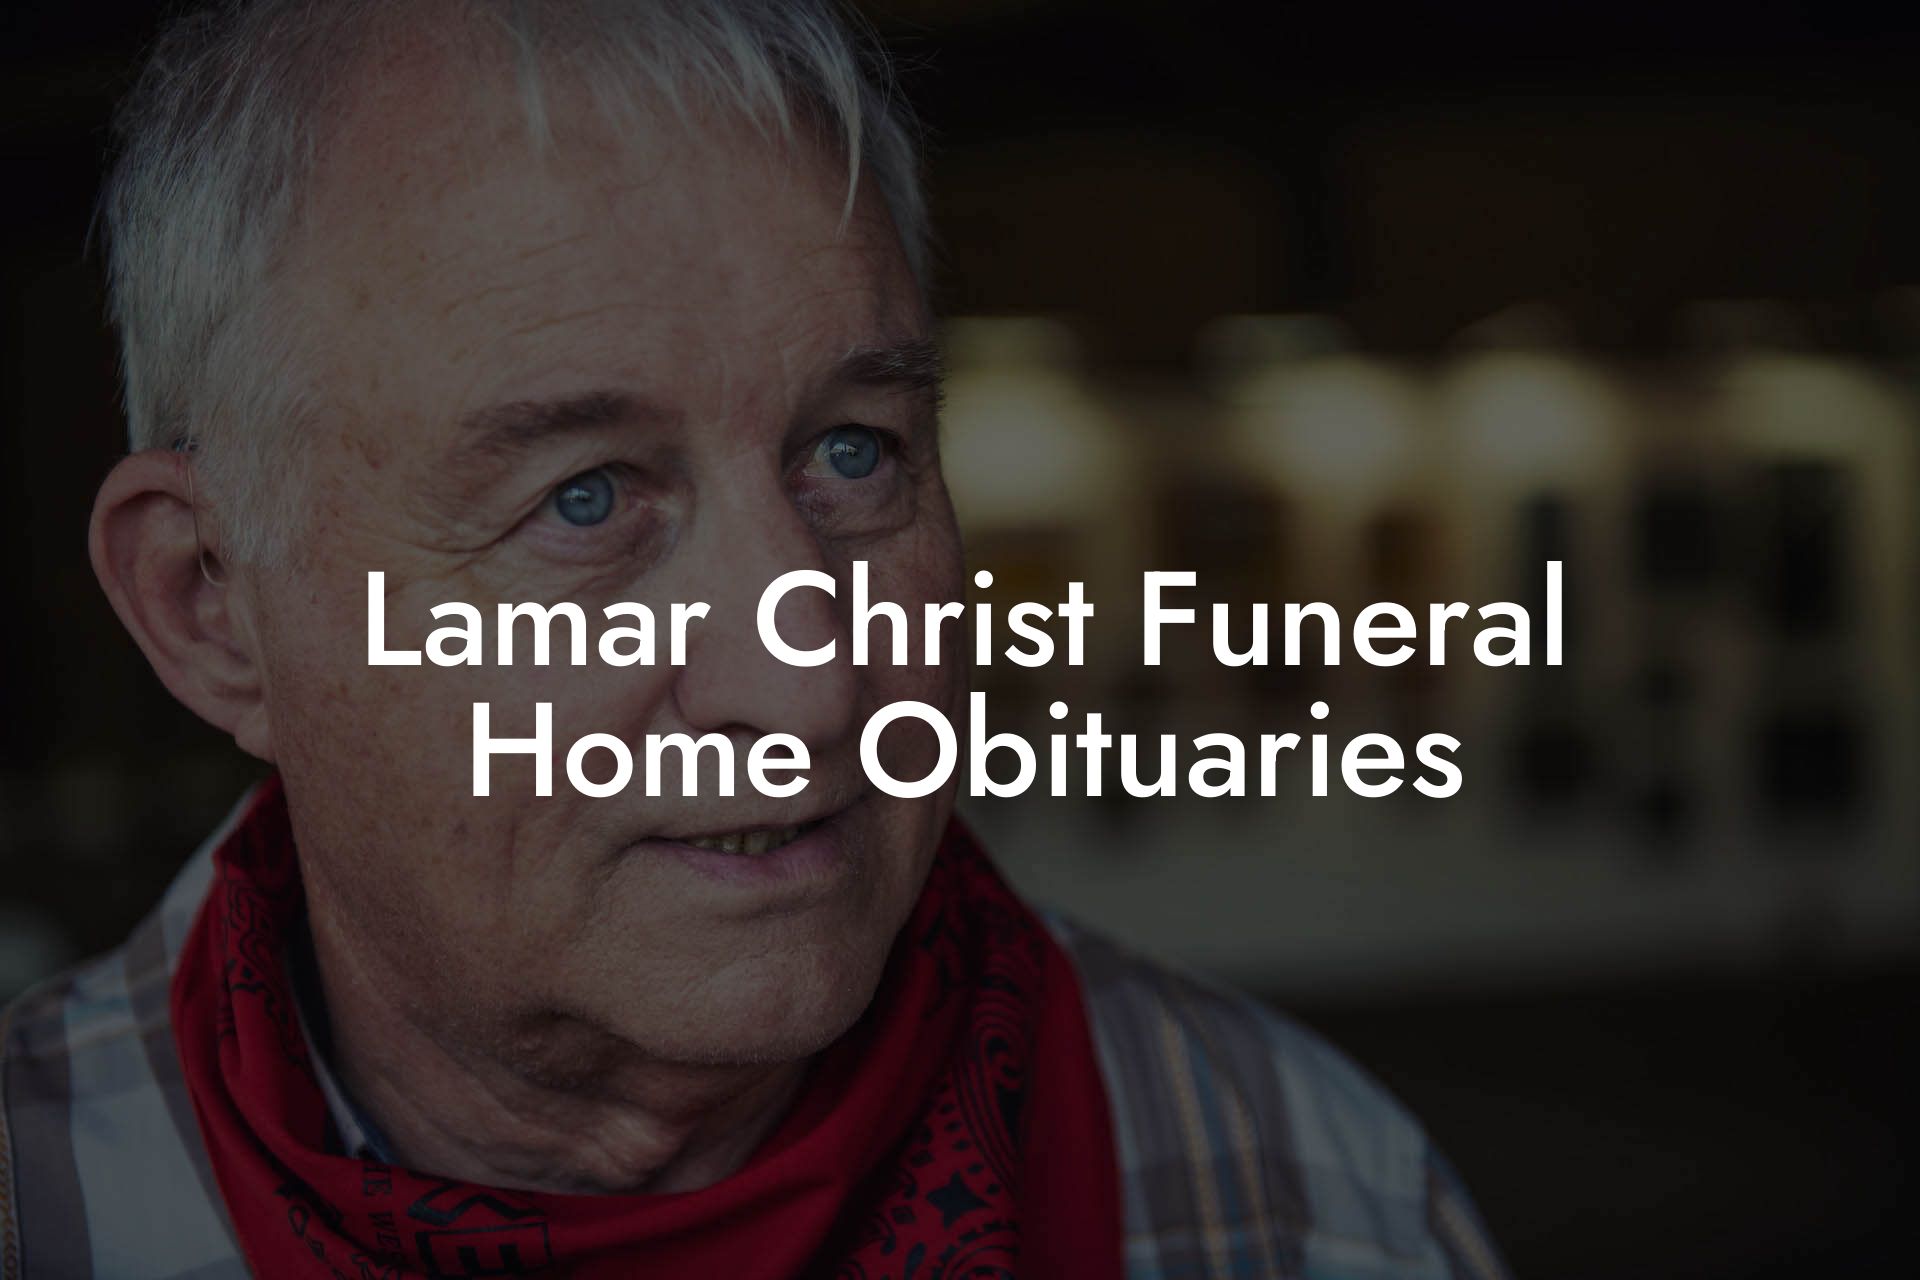 Lamar Christ Funeral Home Obituaries